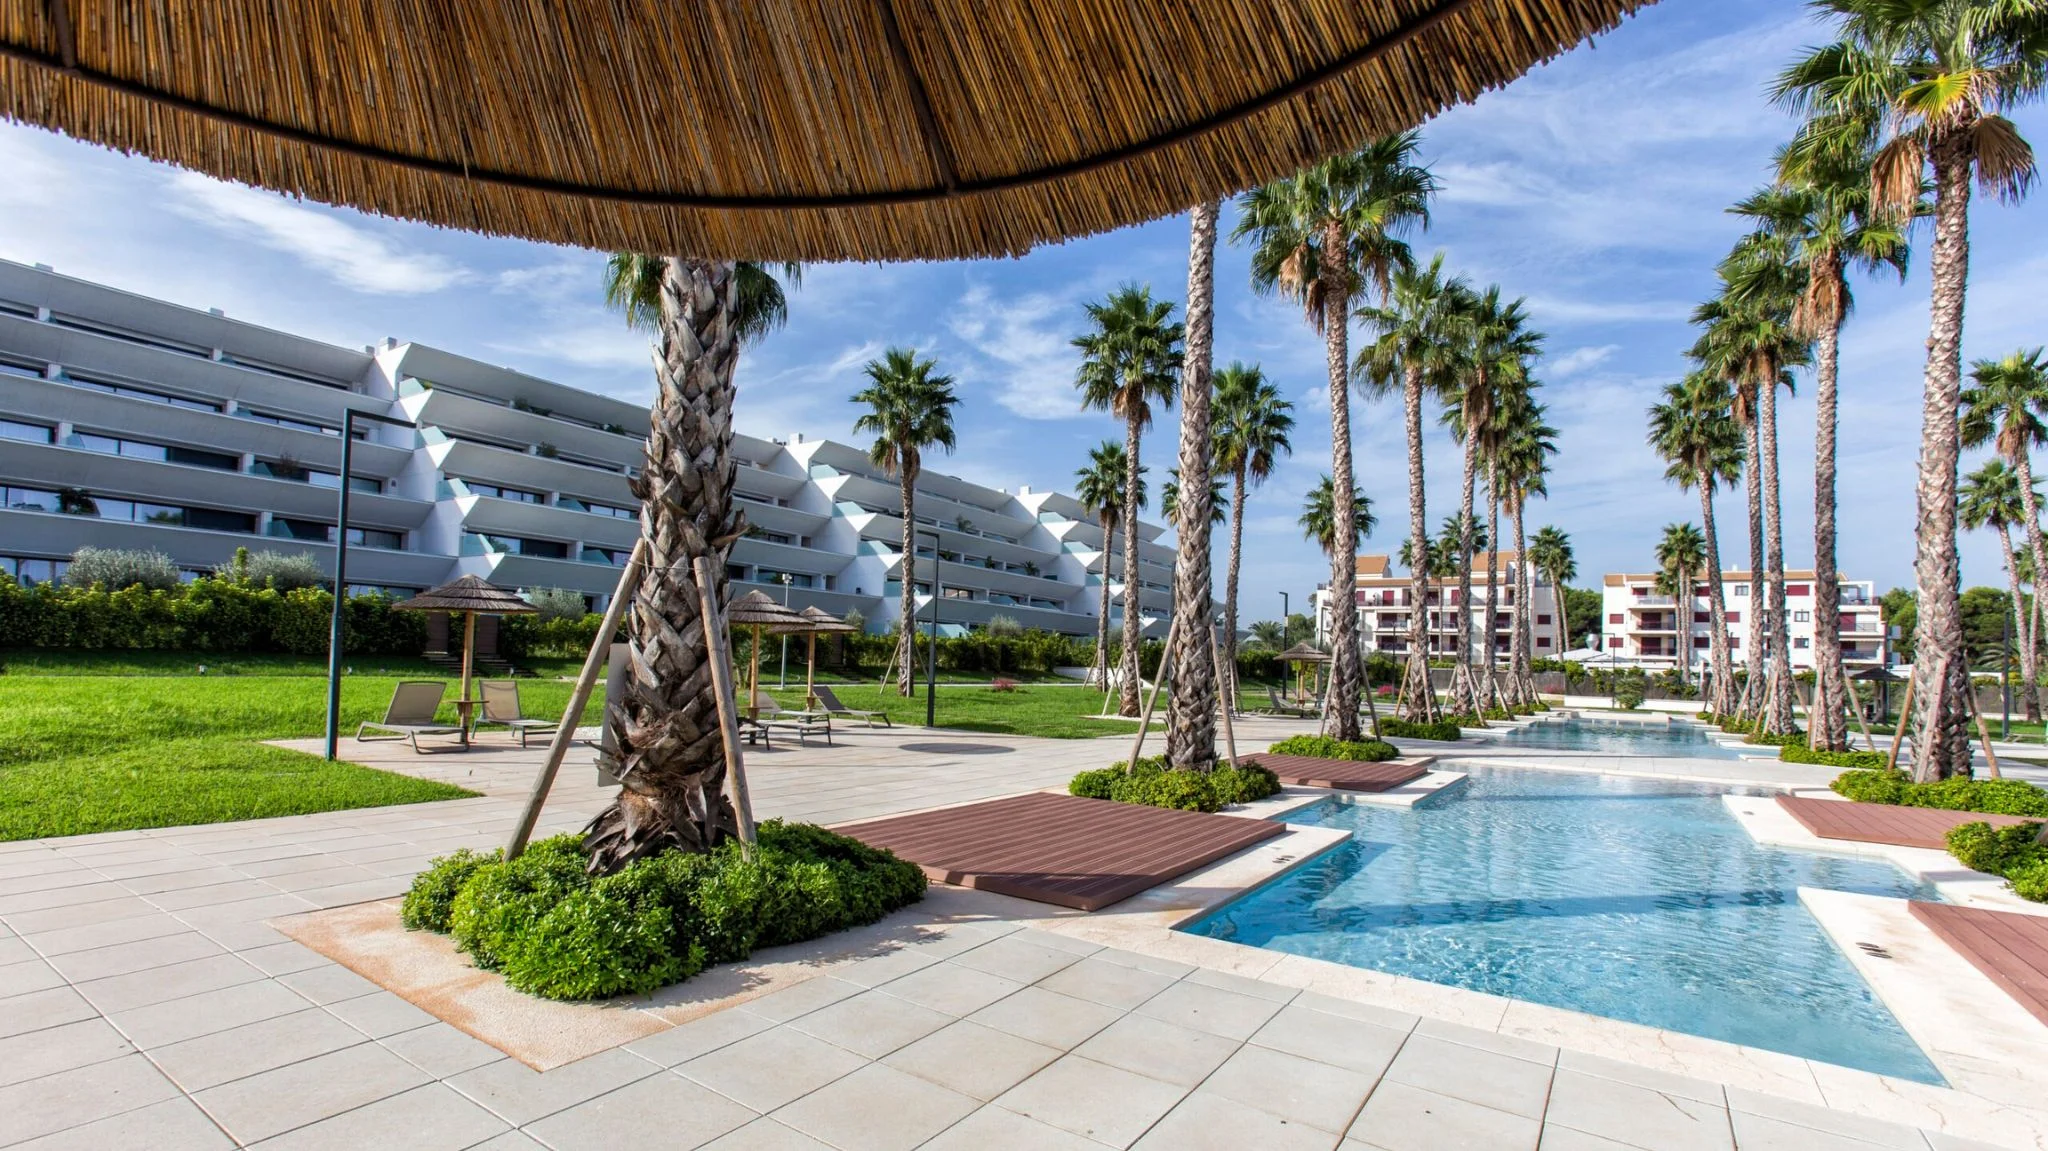 Apartamento en urbanización de lujo con palmeras y piscina de estilo balinés